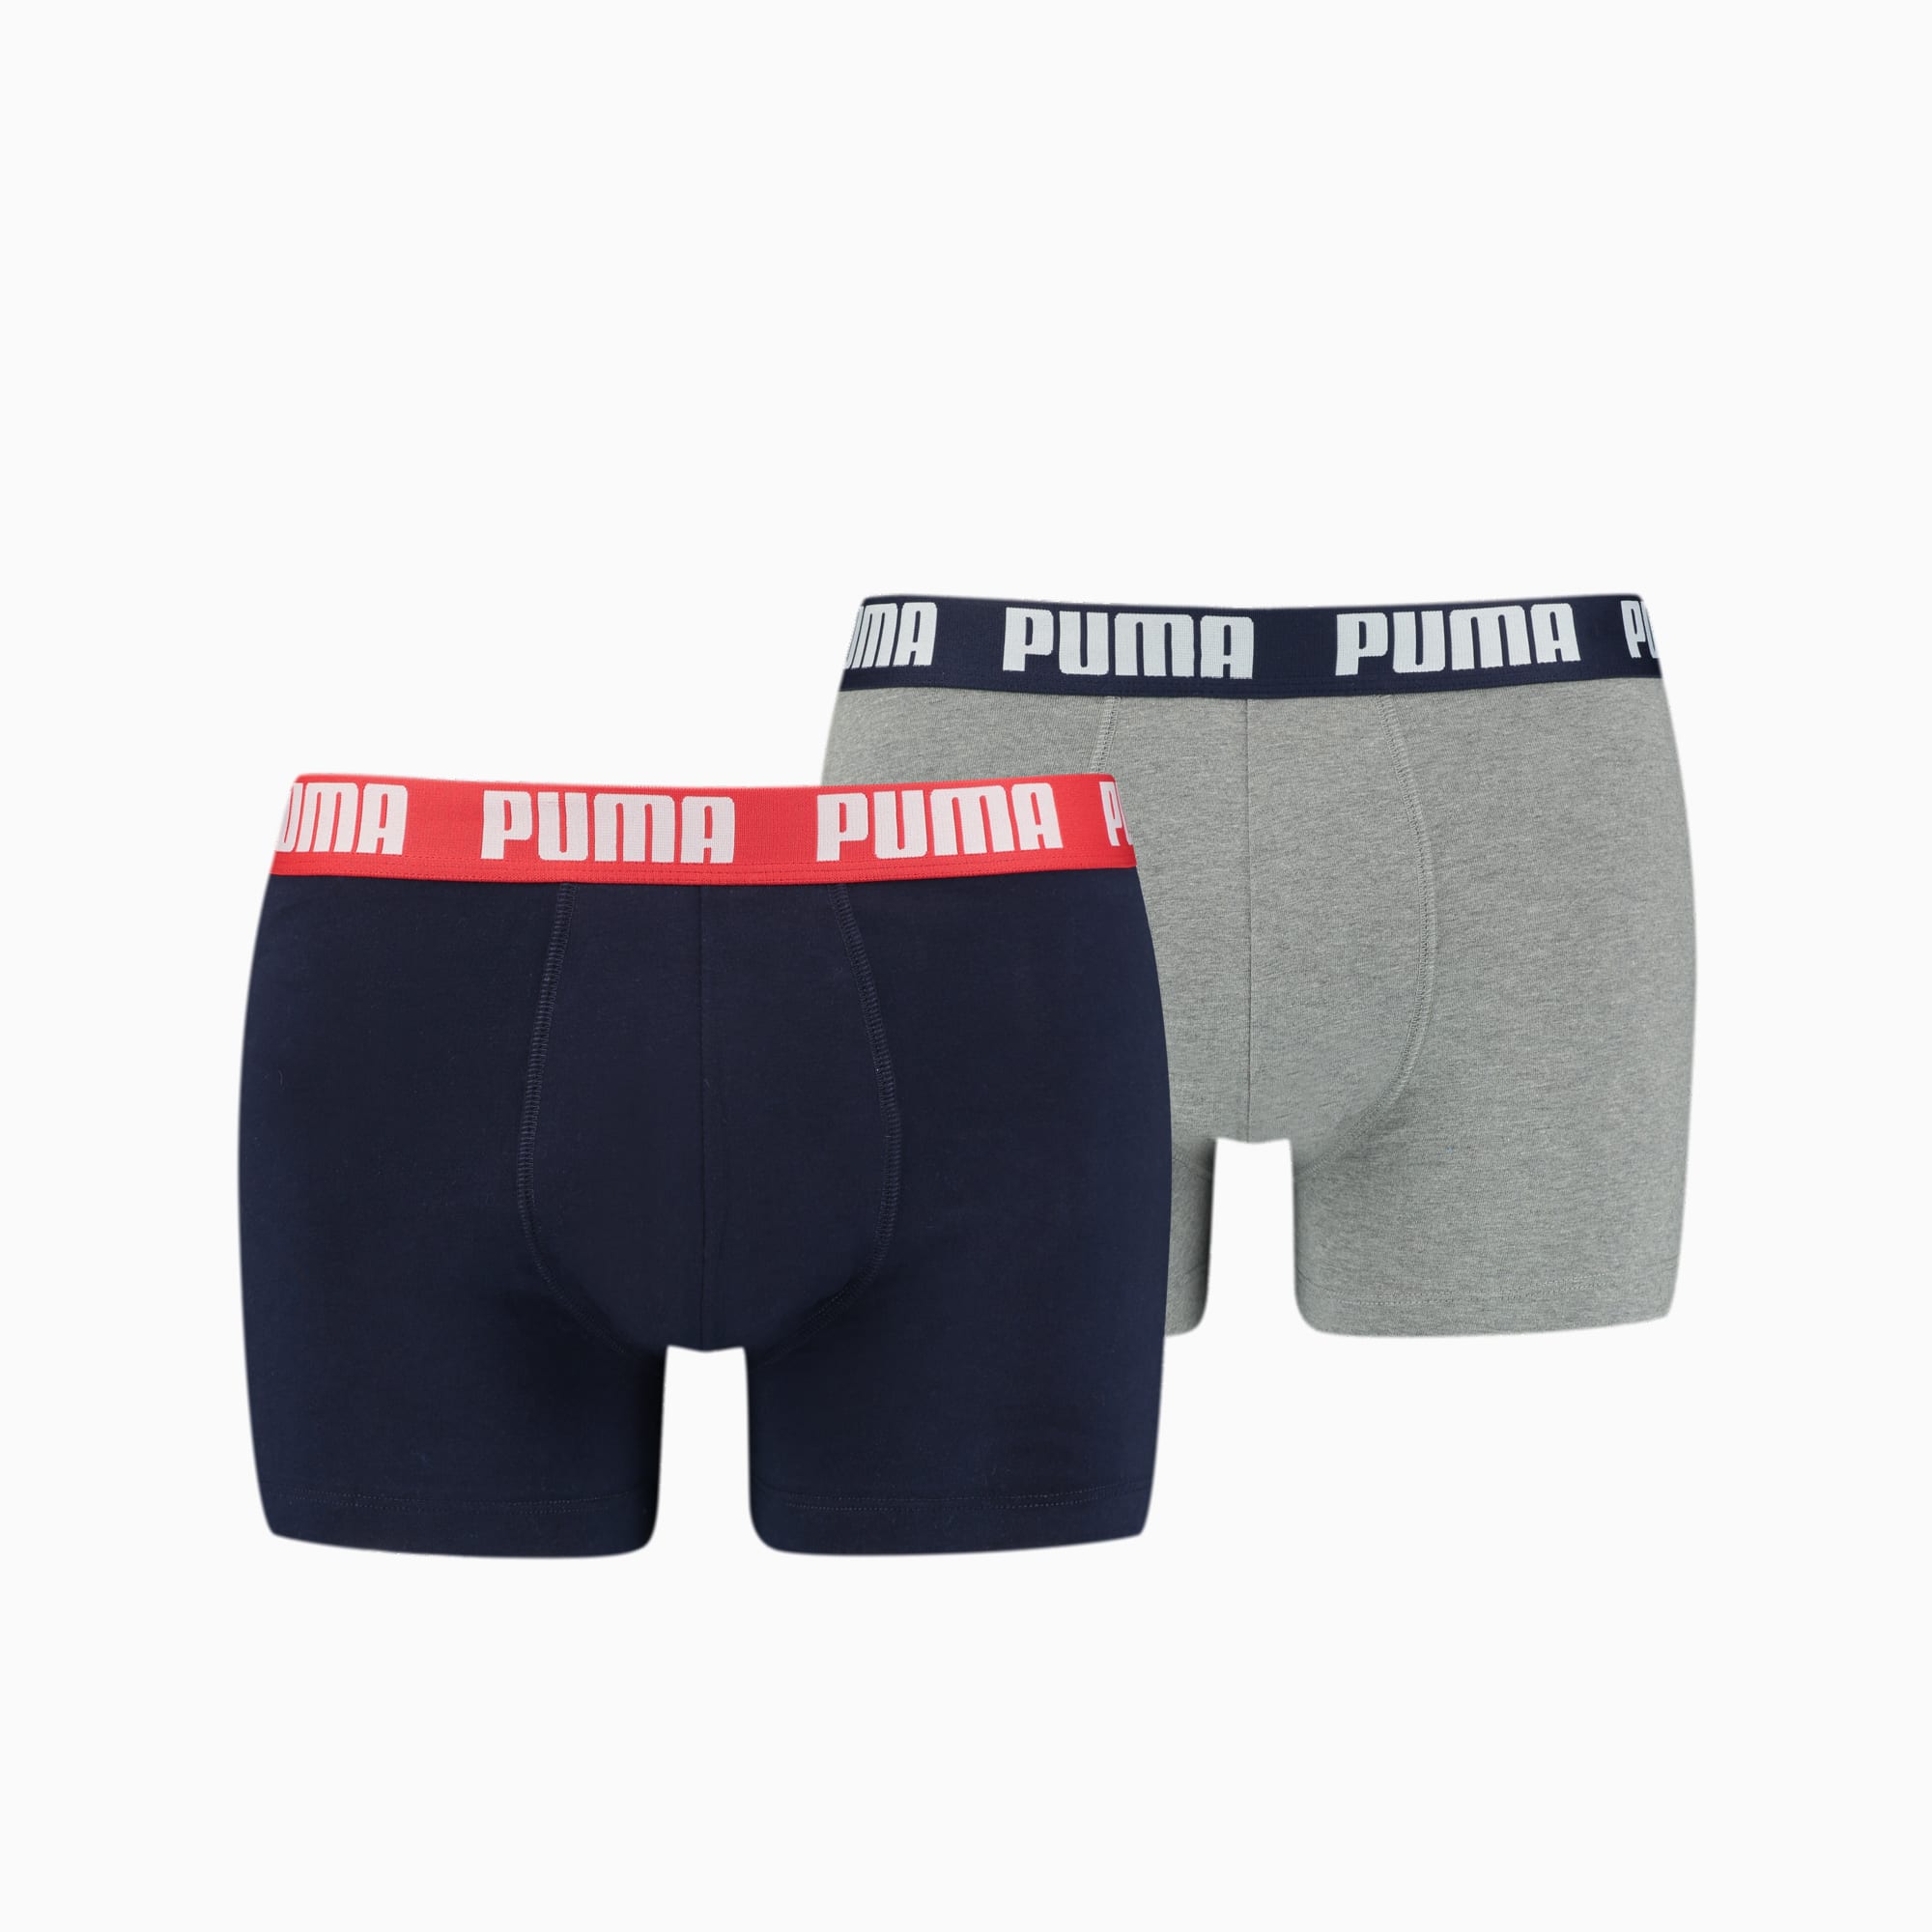 PUMA Basic Boxershorts Herren 2er-Pack, Mit Grau Melange, Grau/Blau, Größe: XXL, Kleidung